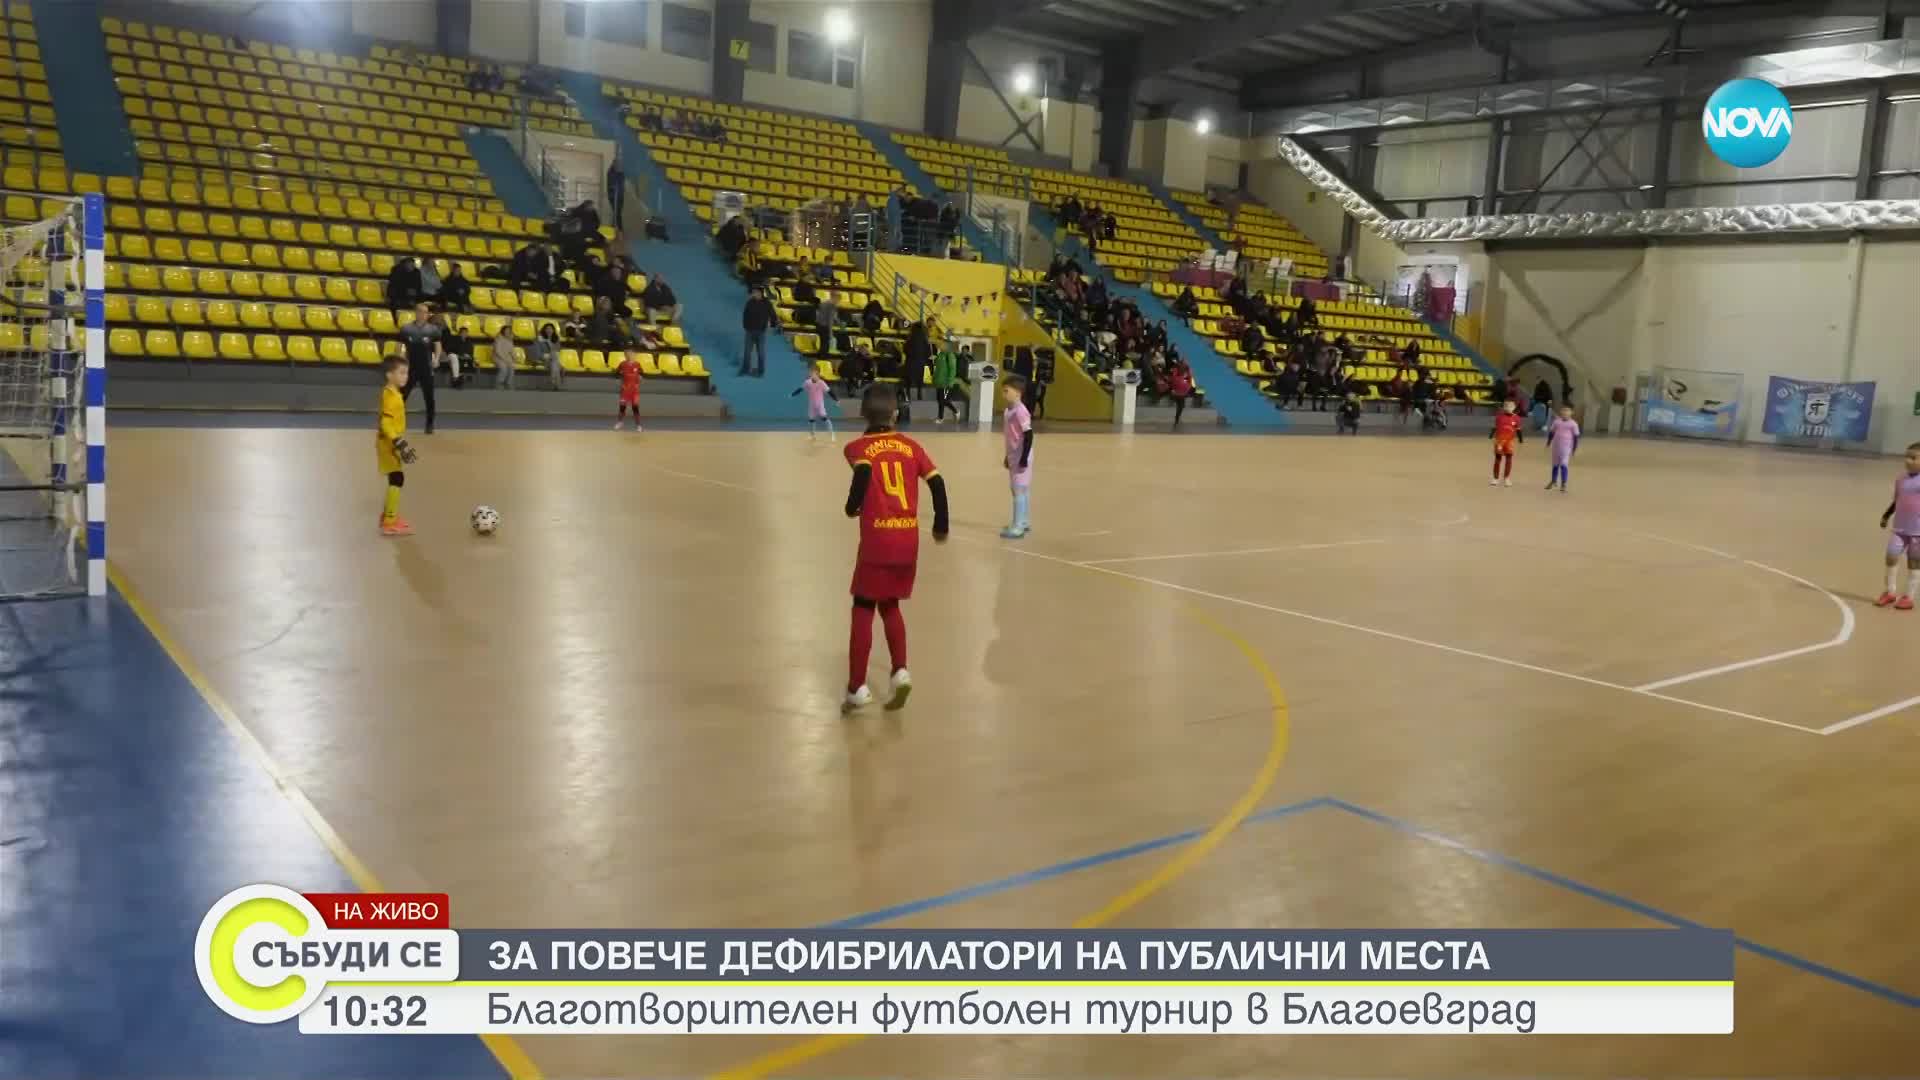 Благотворителен футболен турнир се провежда в Благоевград